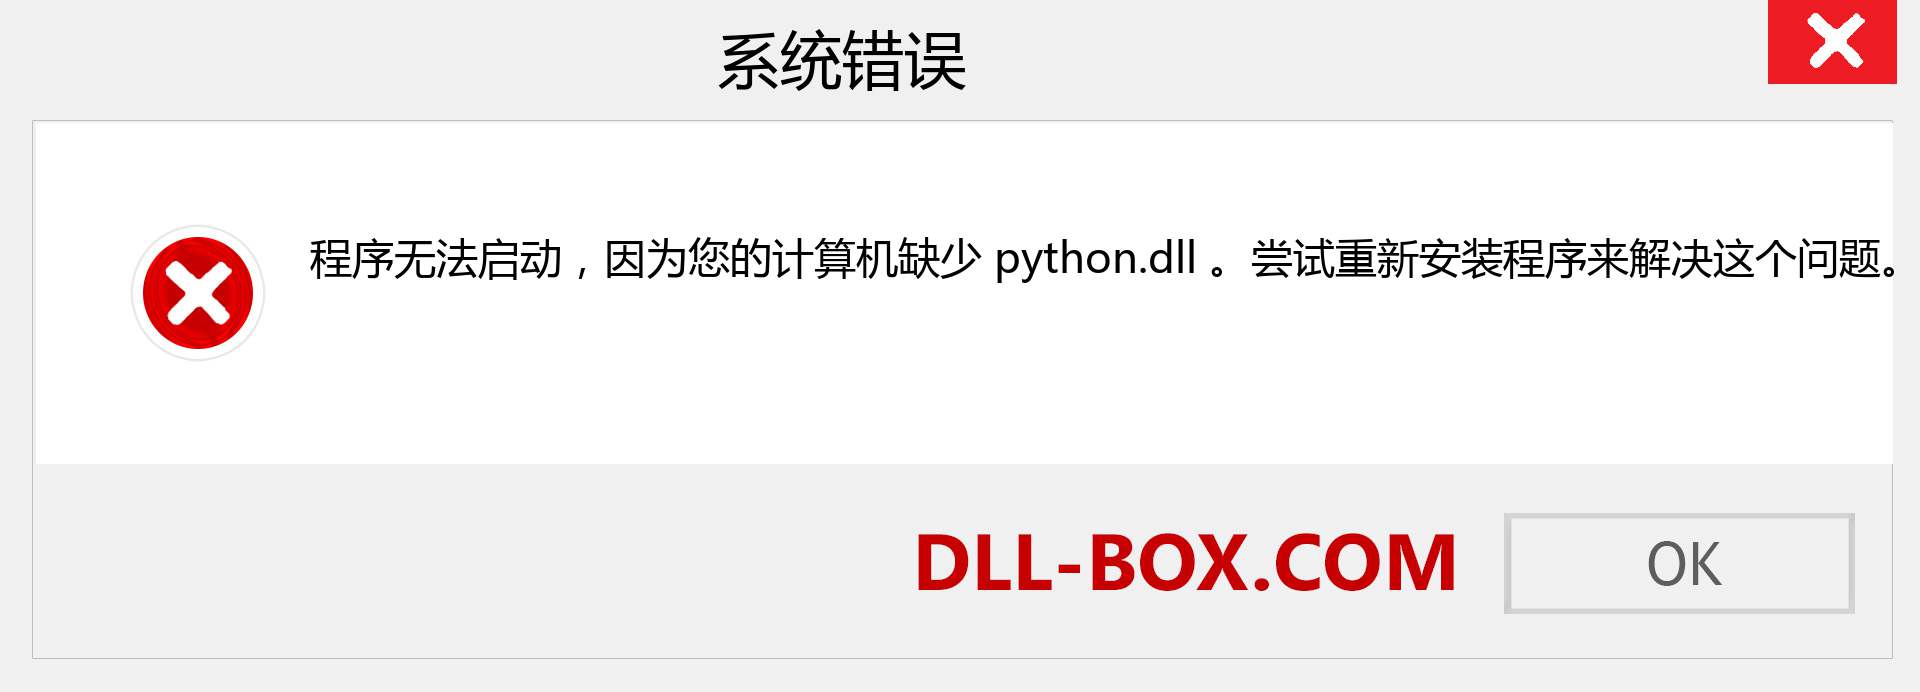 python.dll 文件丢失？。 适用于 Windows 7、8、10 的下载 - 修复 Windows、照片、图像上的 python dll 丢失错误